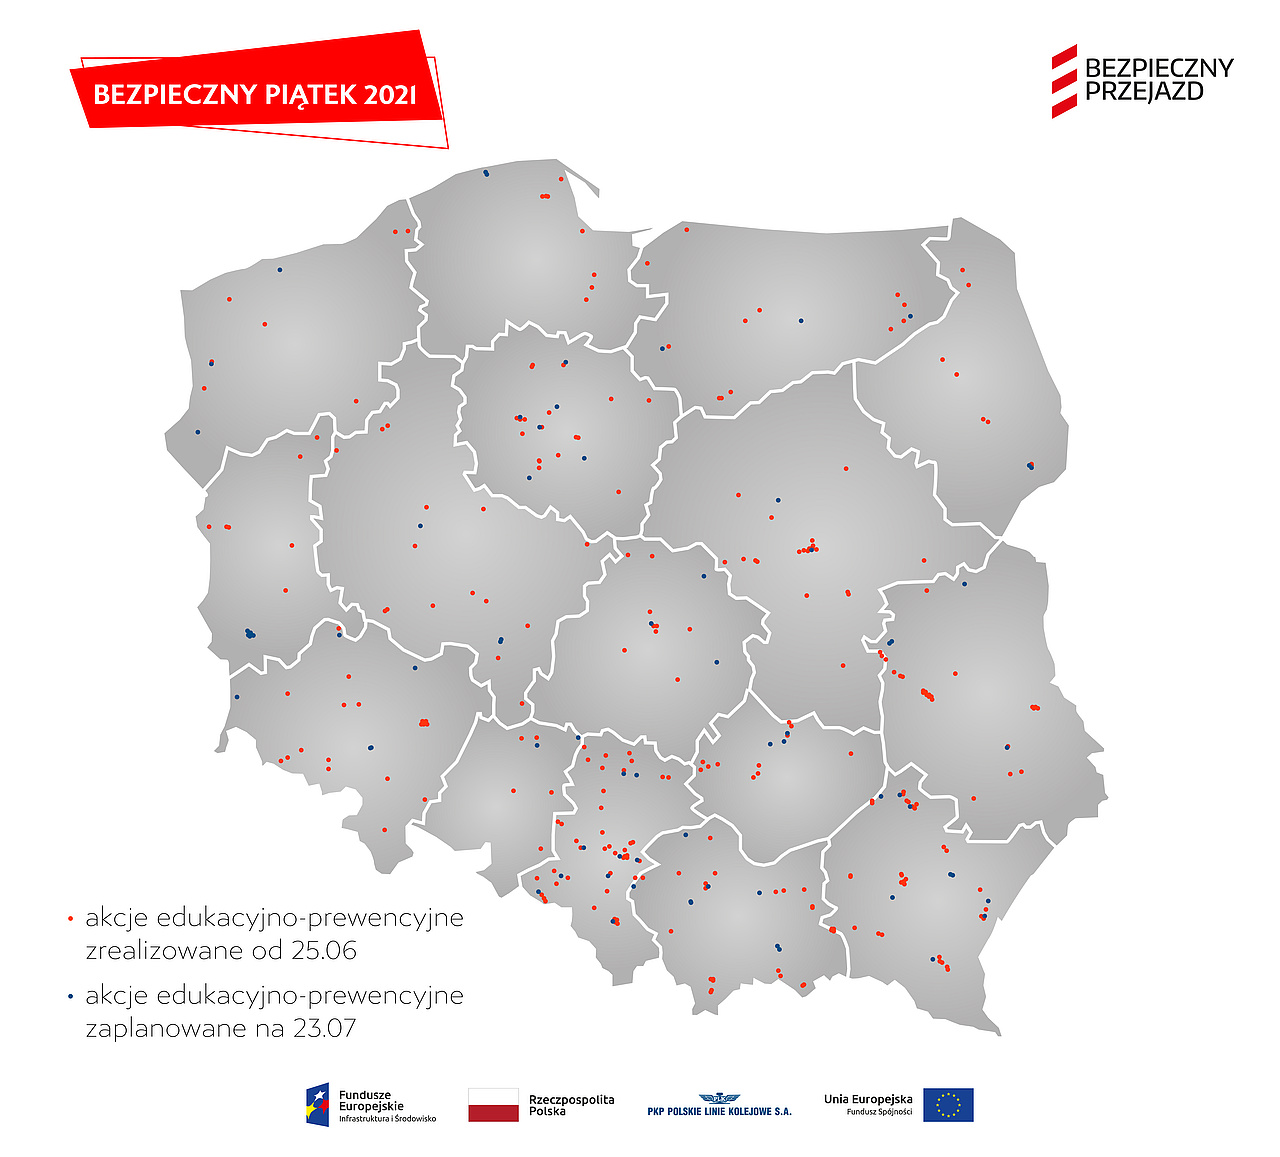 Mapa Polski z naniesionymi lokalizacjami akcji z tekstu newsa.